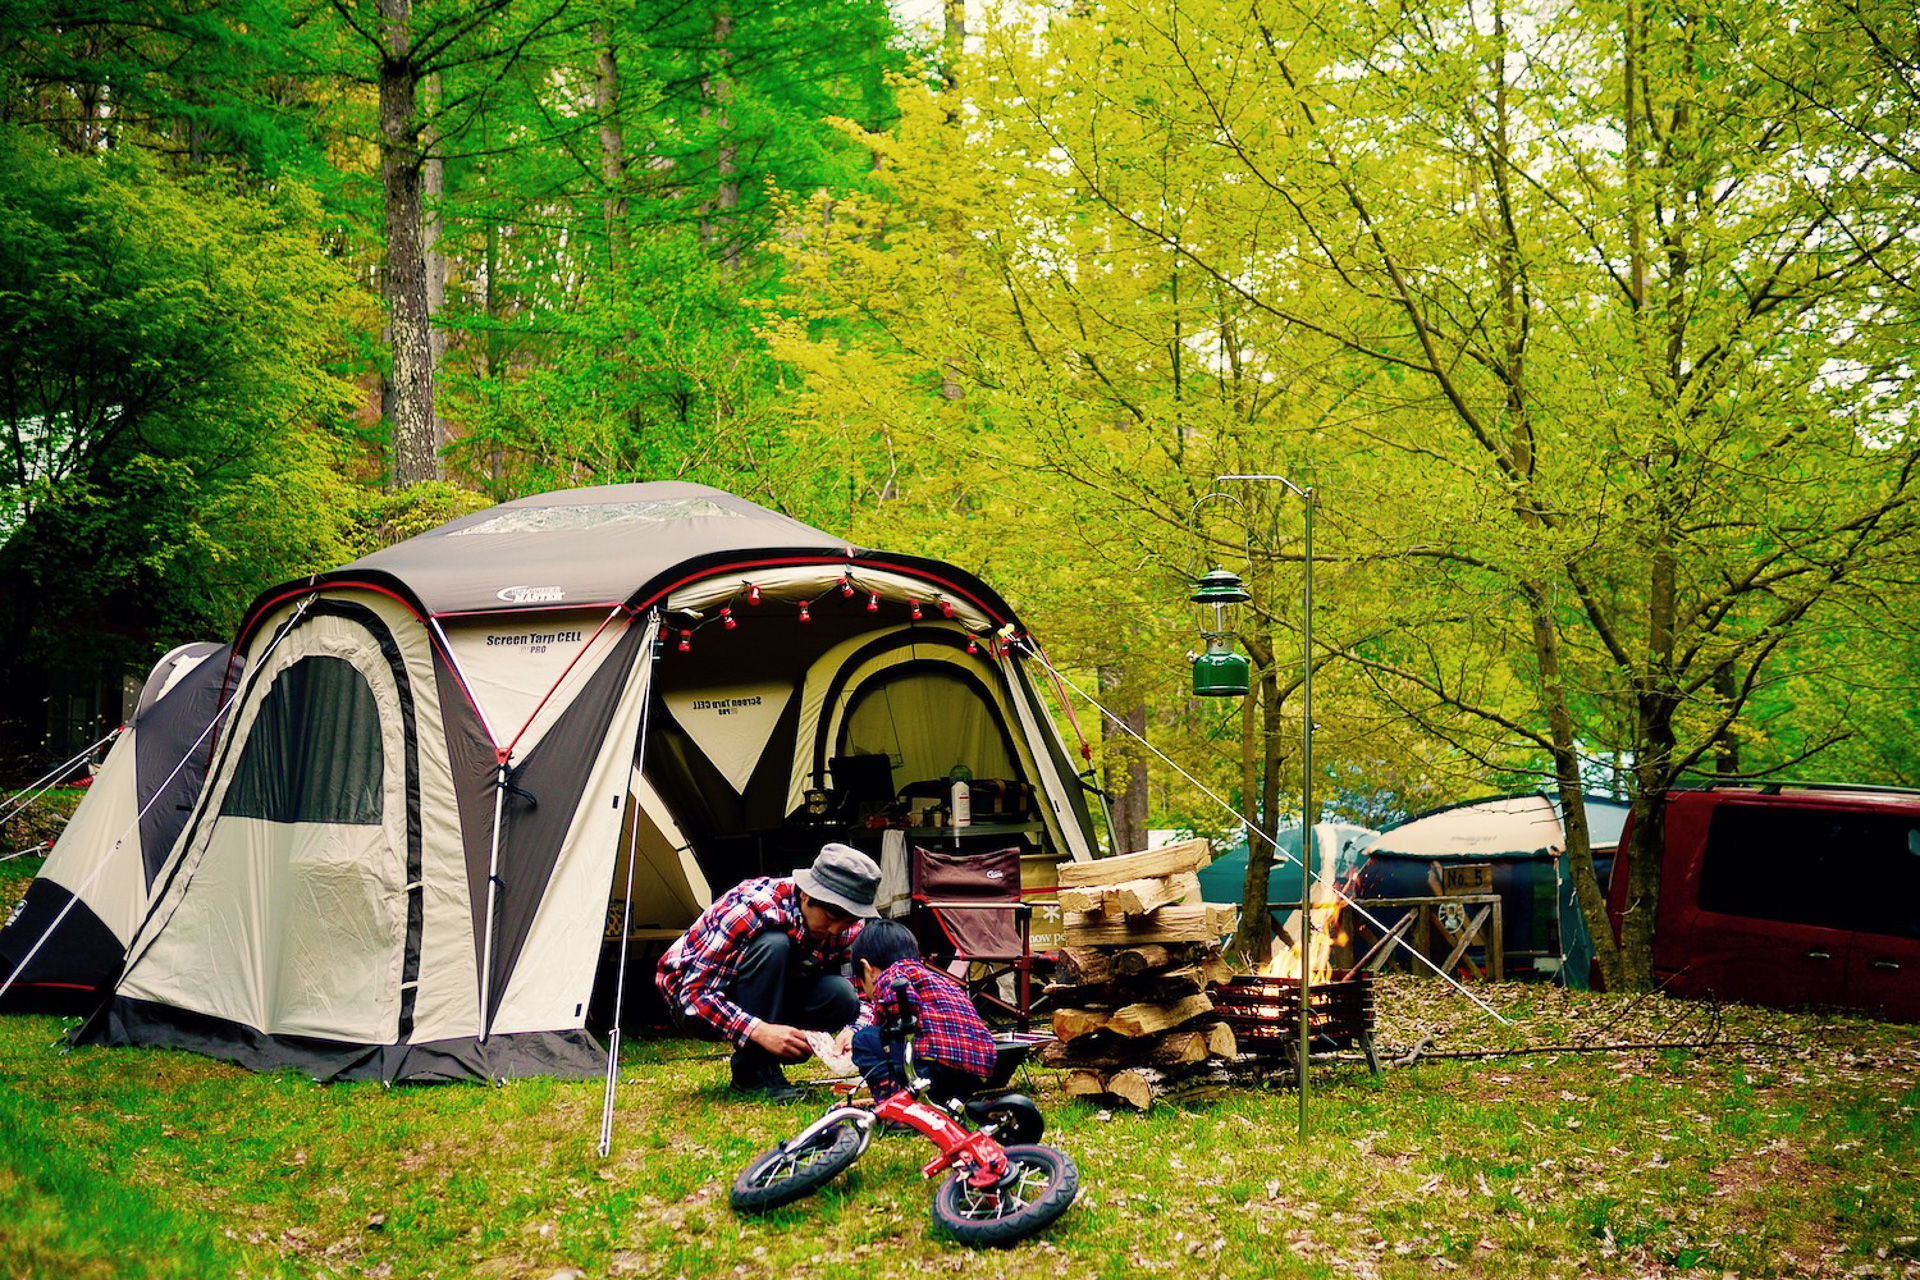 7か所のキャンプ場を平日何度でも利用できるサブスク「CAMP LIFER」 ソロキャンパーなら月額4500円から - トラベル Watch